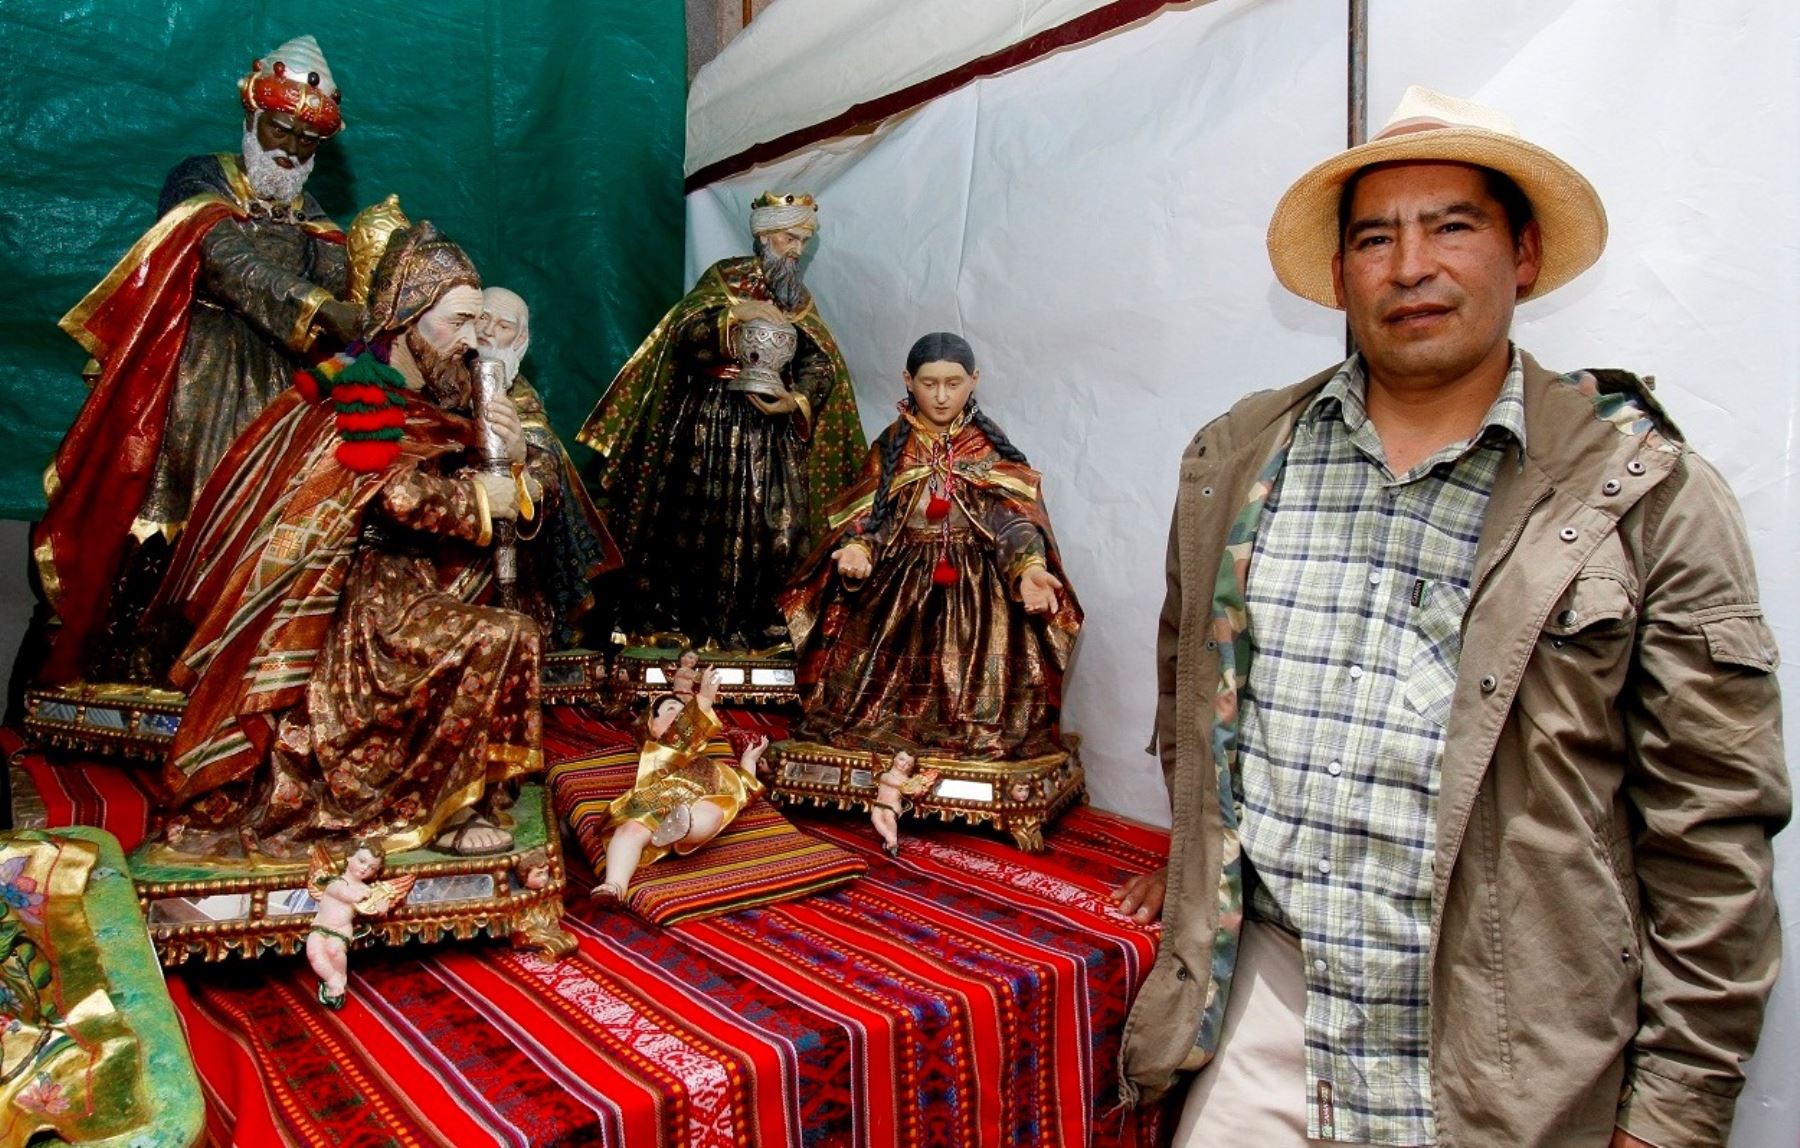 El impresionante nacimiento andino del artista cusqueño Ronald Flores concita interés en Santurantikuy. Foto: Percy Hurtado